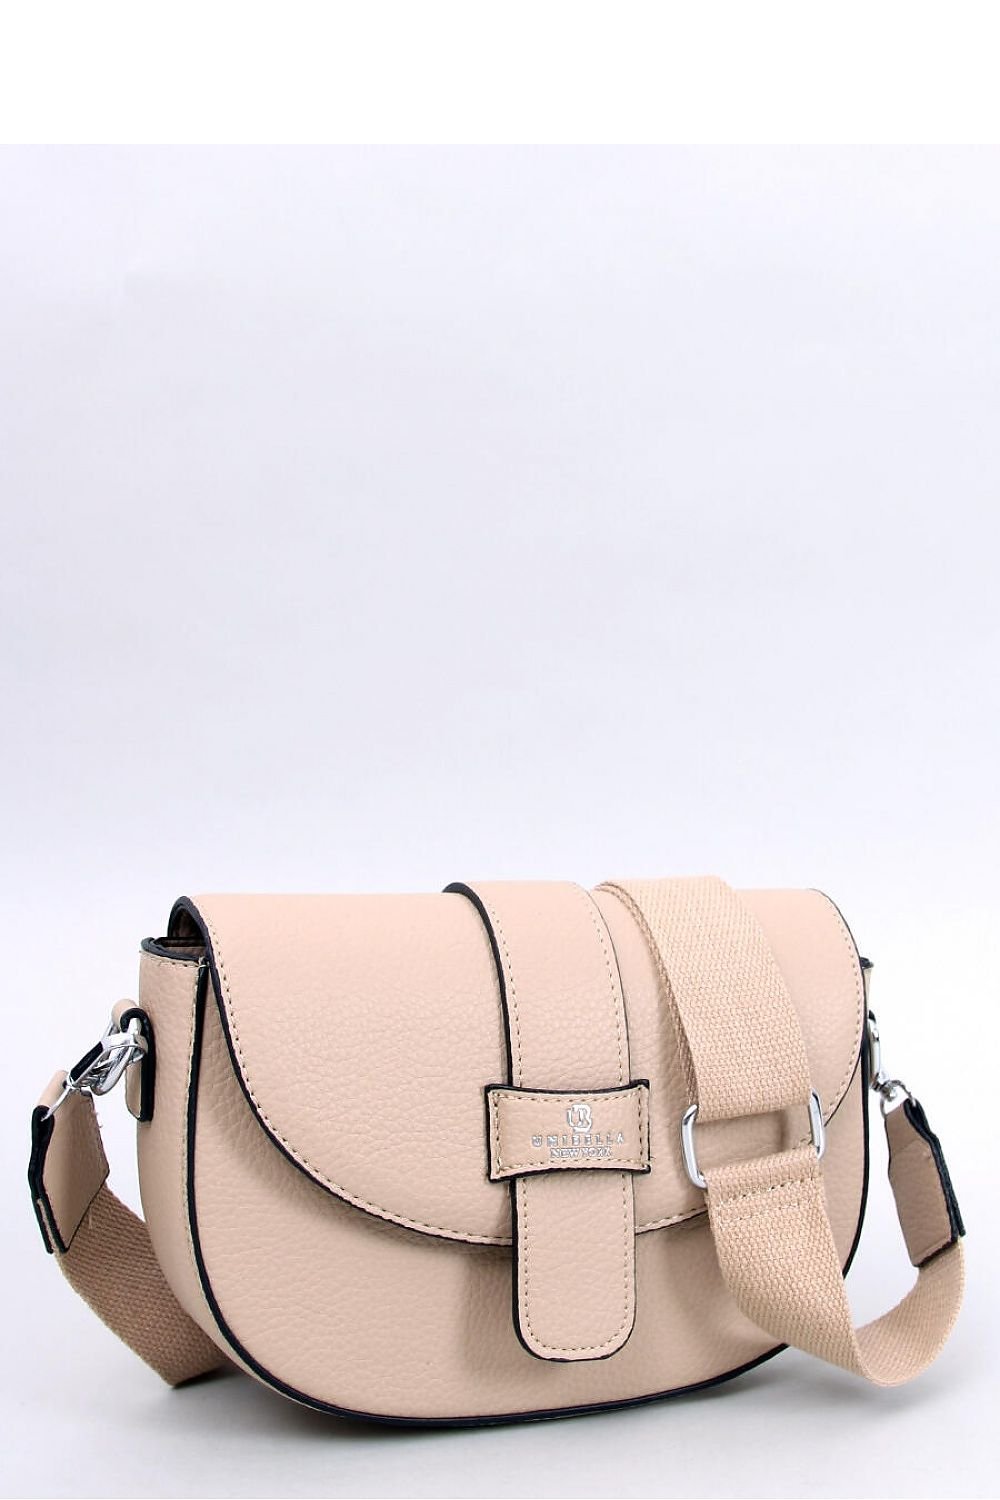 Beige messenger bag with detachable adjustable strap